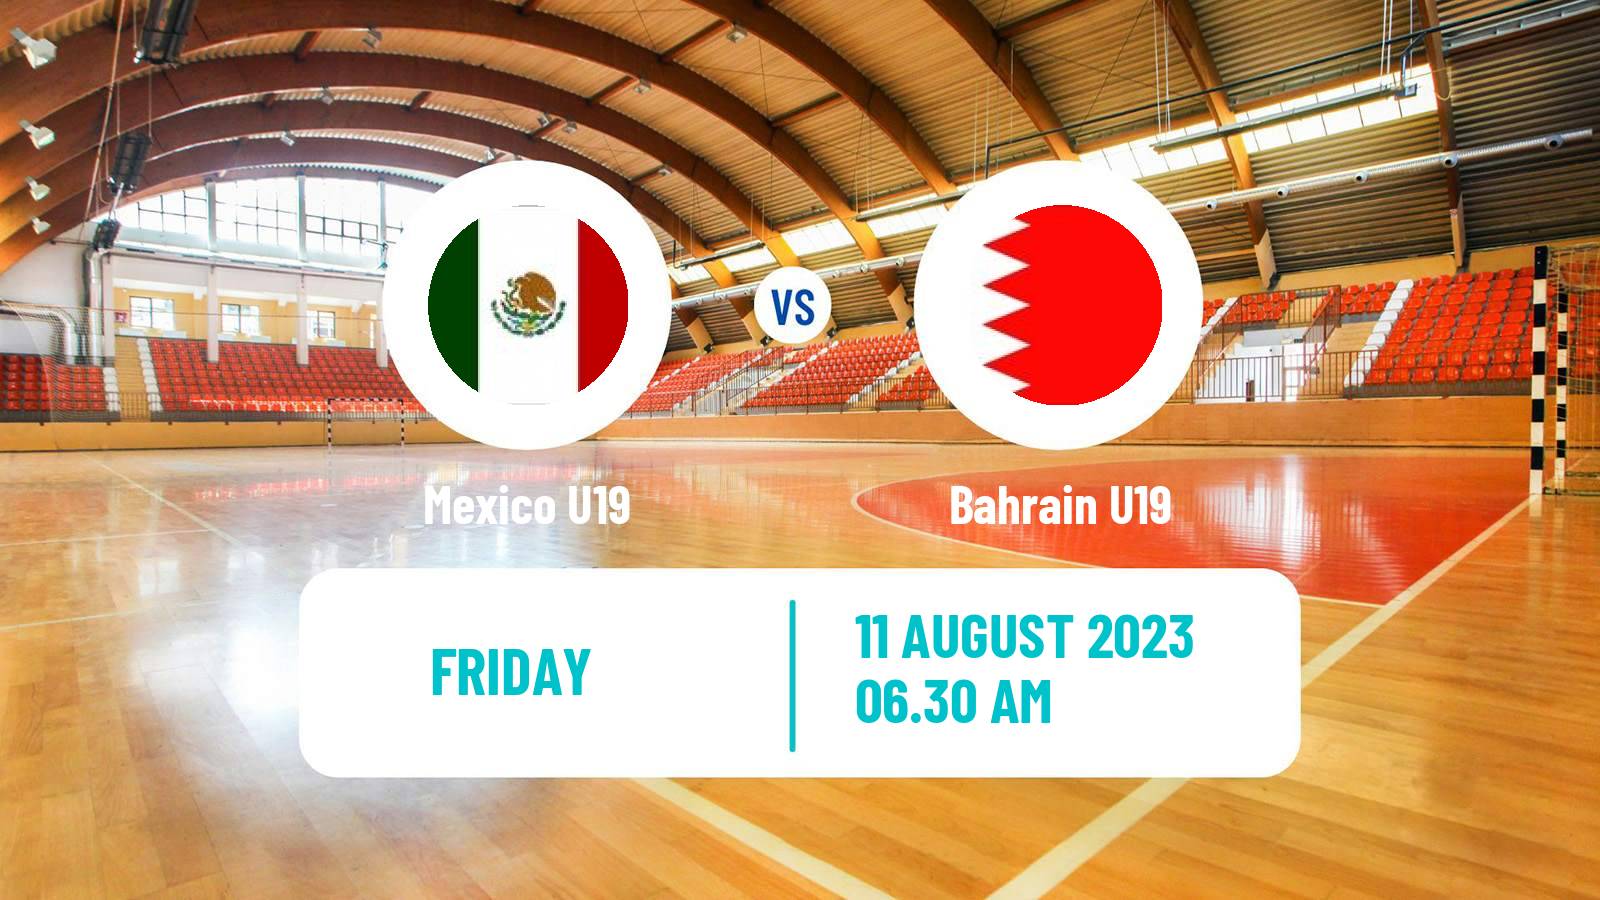 Handball World Championship U19 Handball Mexico U19 - Bahrain U19